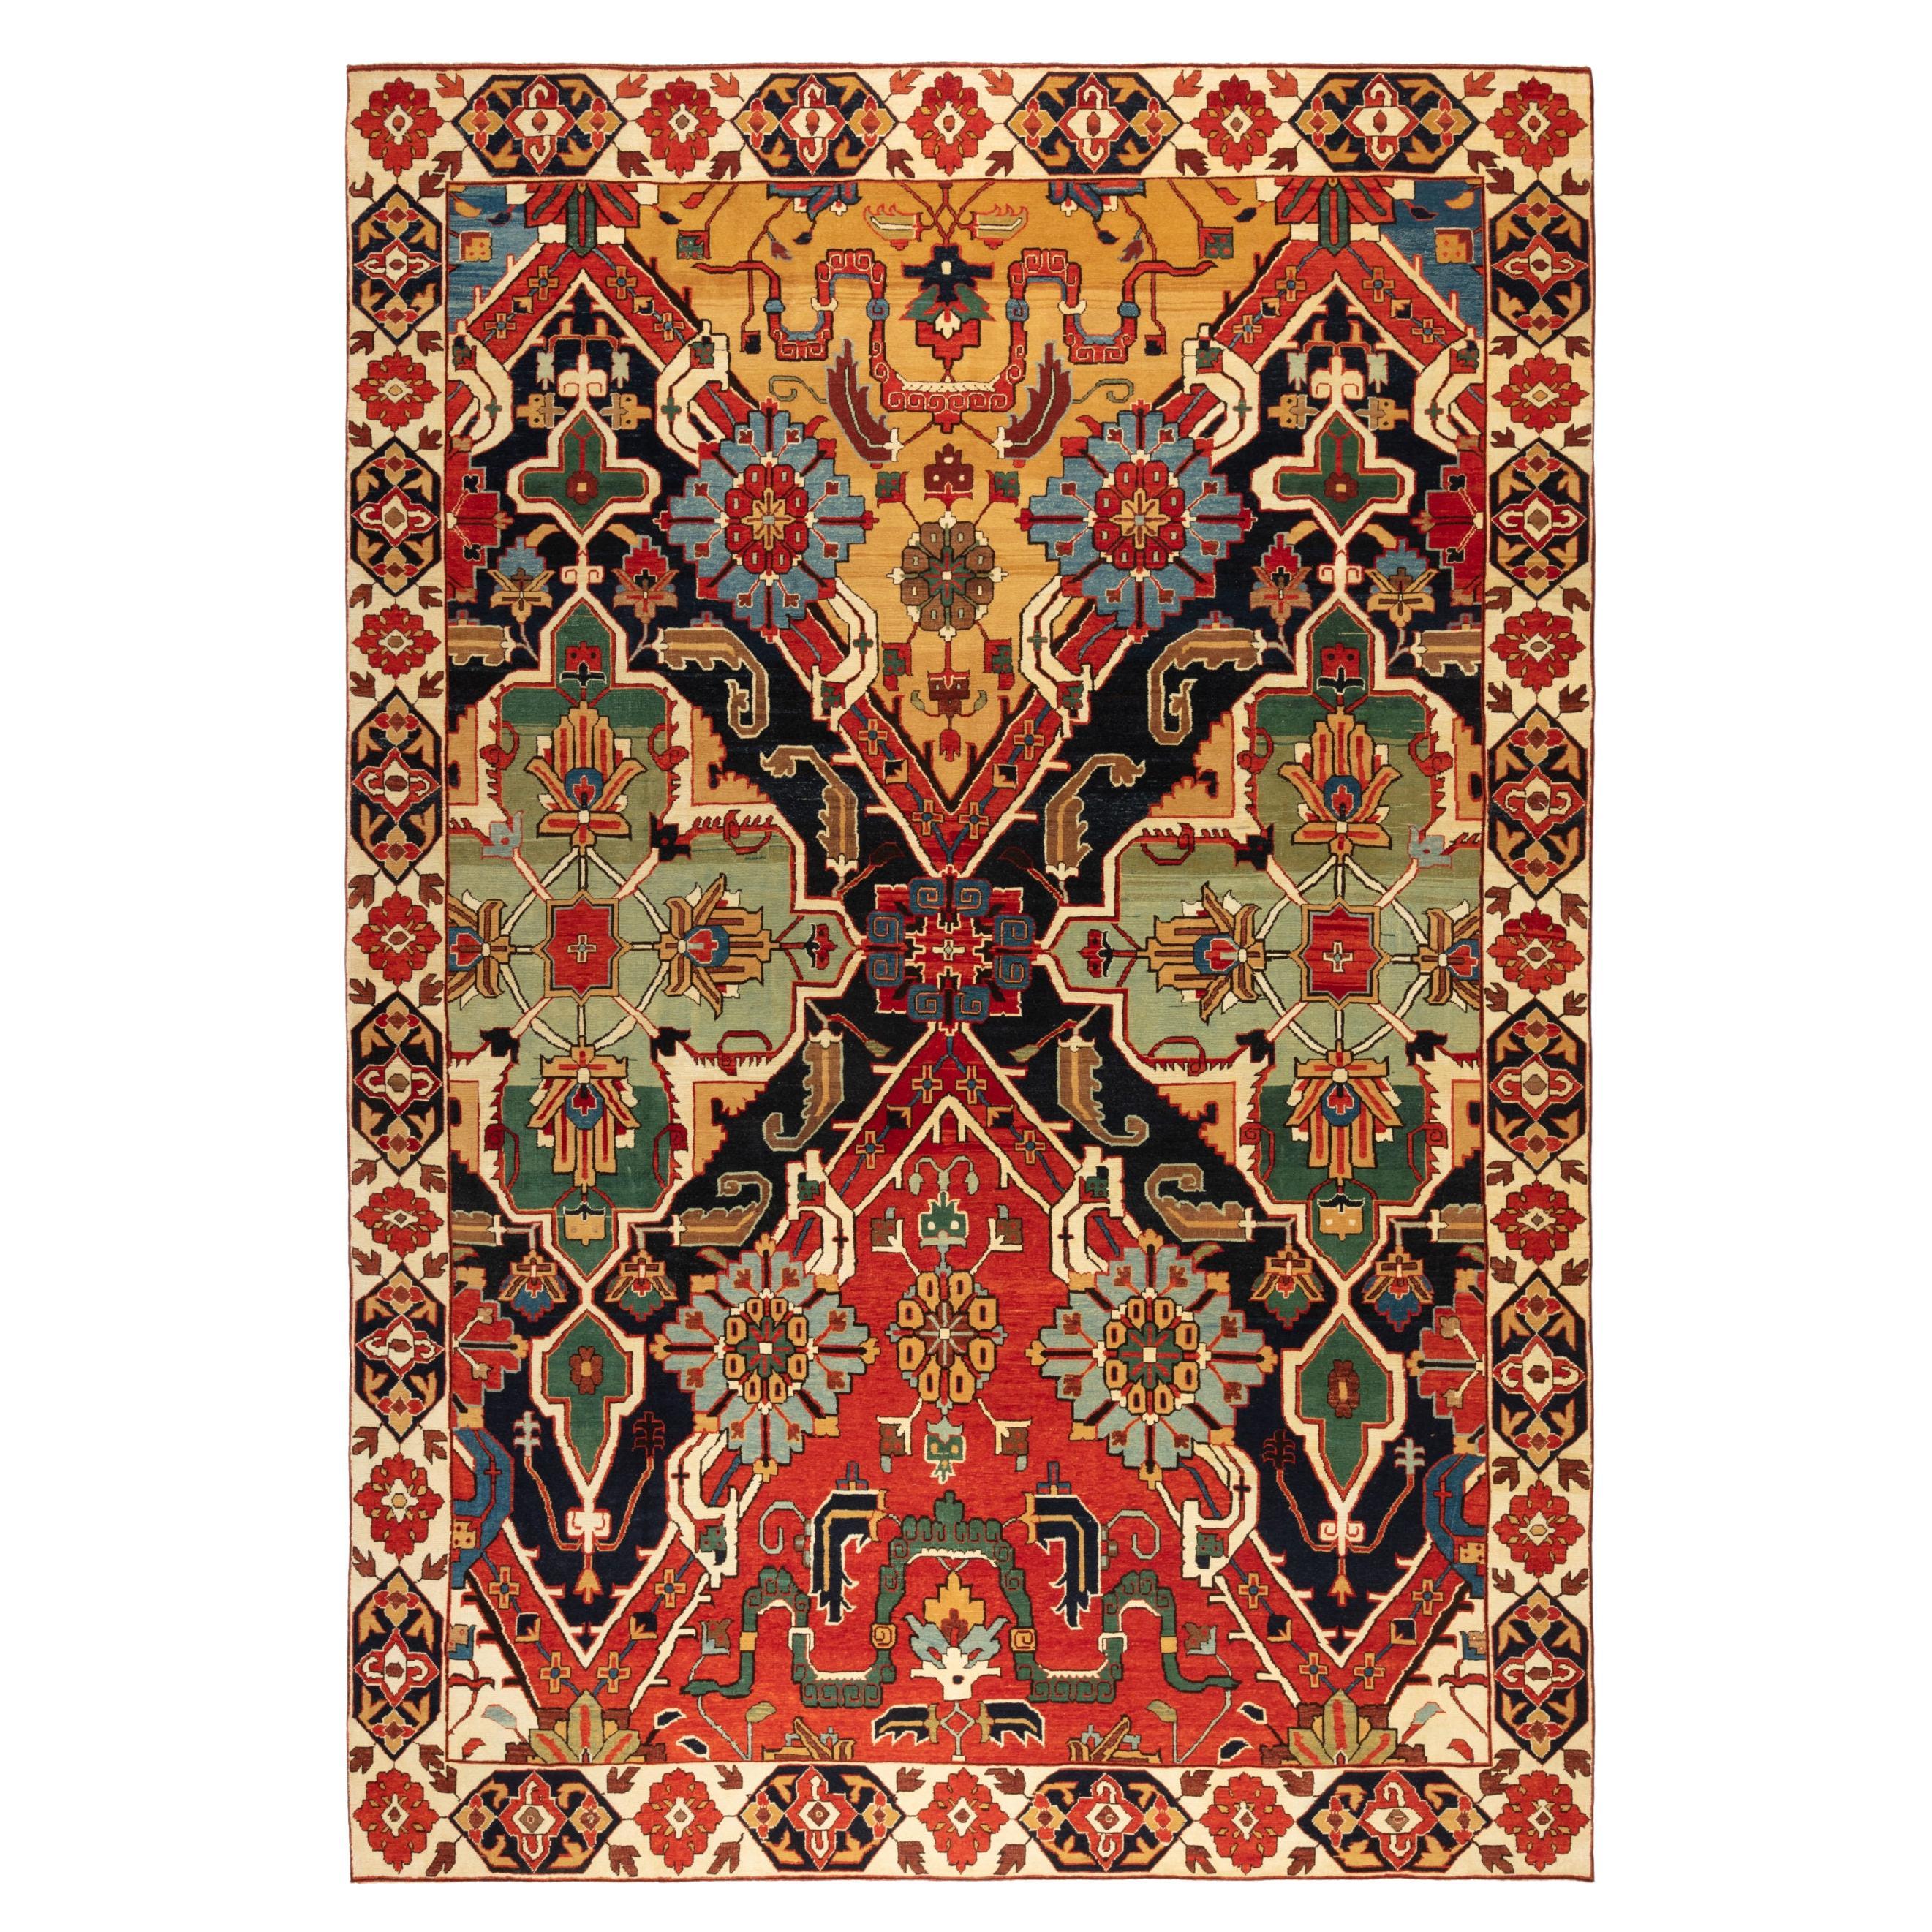 Ararat Rugs Nigde Carpet, Antique Caucasus Museum Revival Rug, Natural Dyed